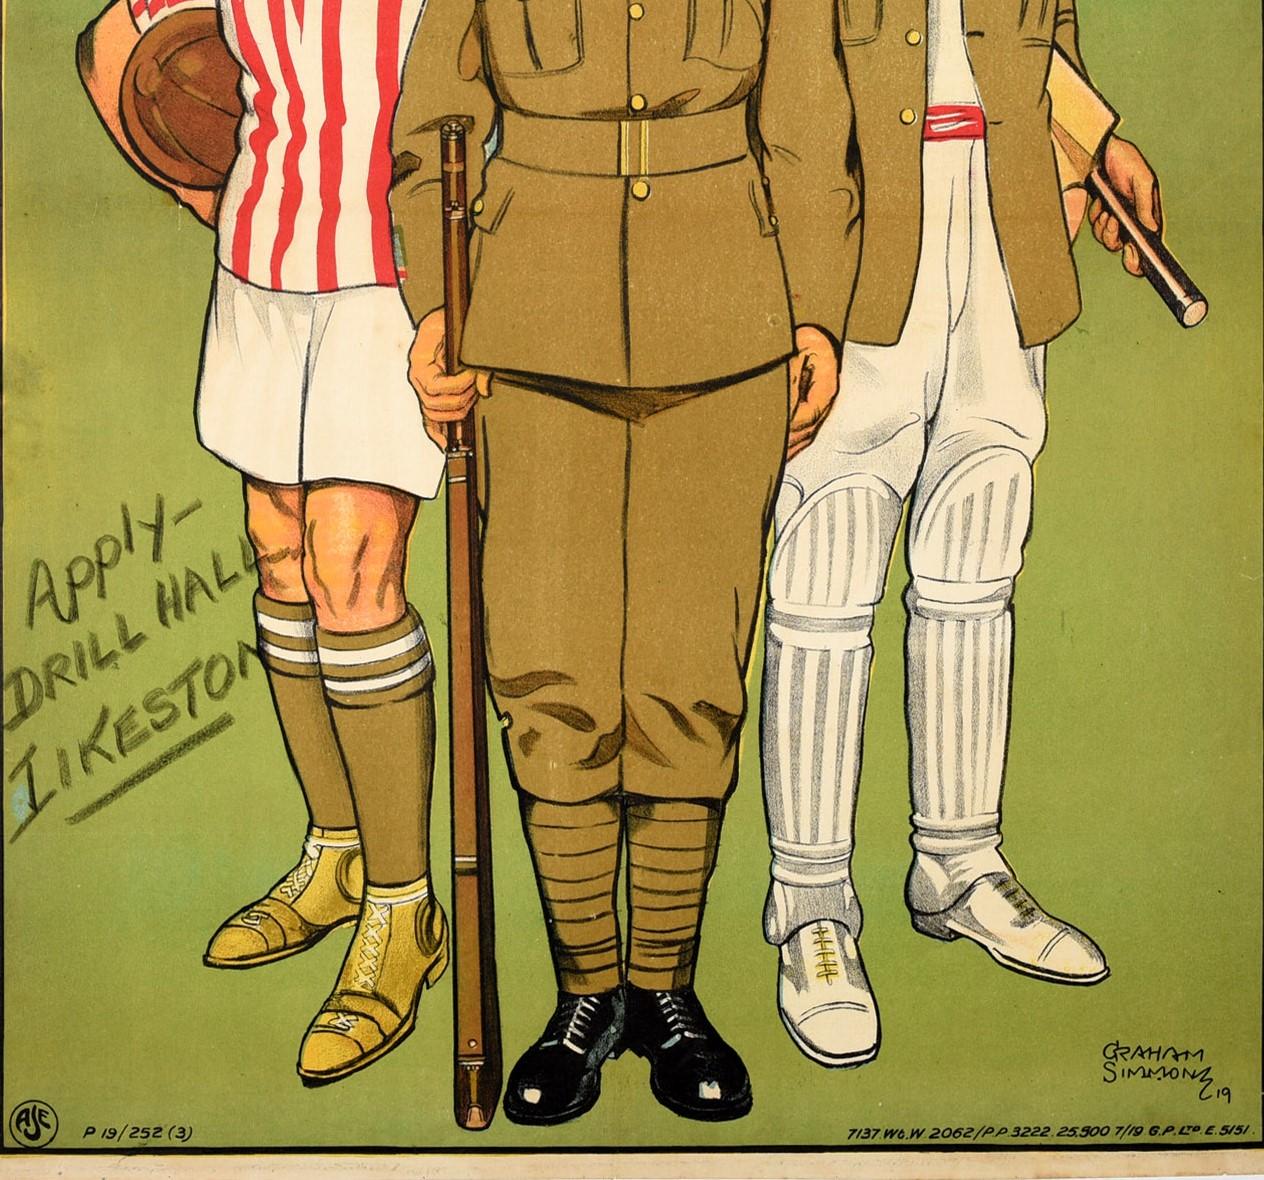 Originales antikes Propagandaplakat - The Army Isn't All Work - mit einem großartigen Design, das drei britische Infanteristen zeigt, die dem Betrachter entgegenblicken, wobei einer in seiner Militäruniform ein Gewehr in der Hand hält und zwischen